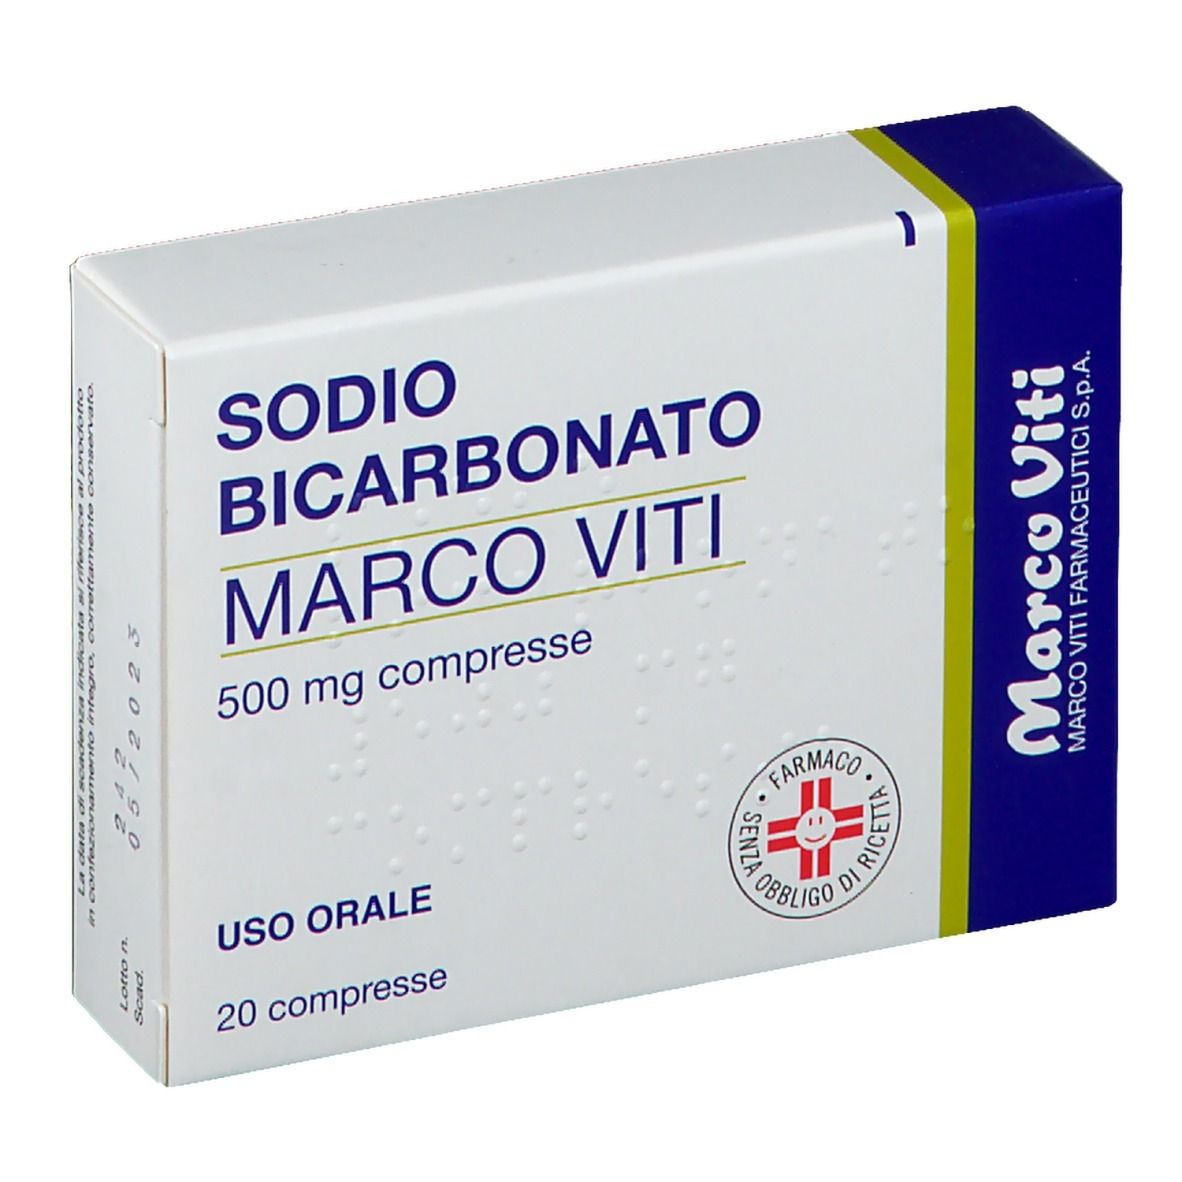 Sodio Bicarbonato Marco Viti 500 mg compresse